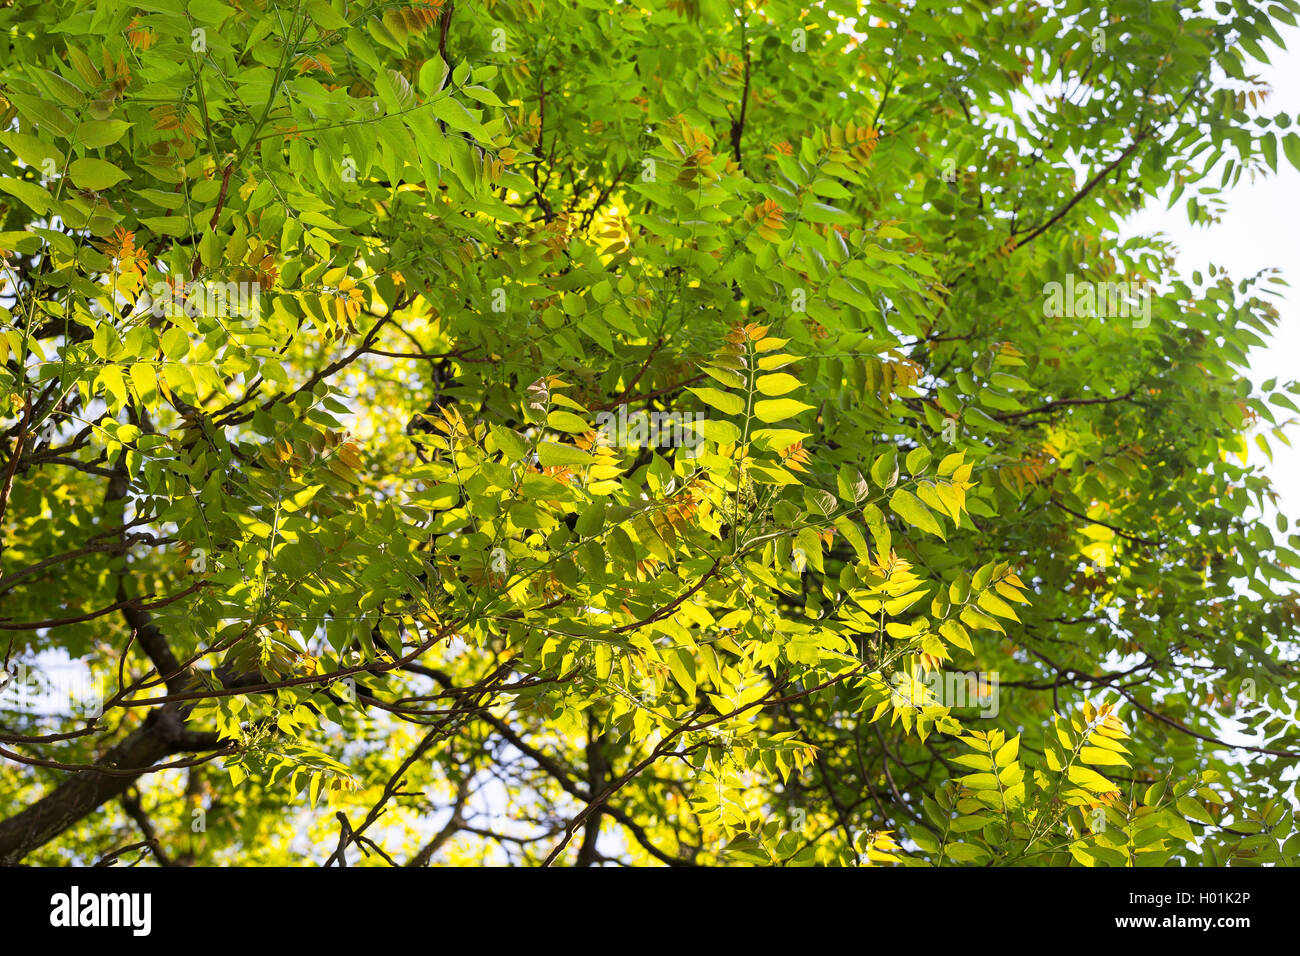 Arbre du ciel, arbre-de-ciel (Ailanthus altissima, Ailanthus glandulosa), des succursales à rétroéclairage, Allemagne Banque D'Images